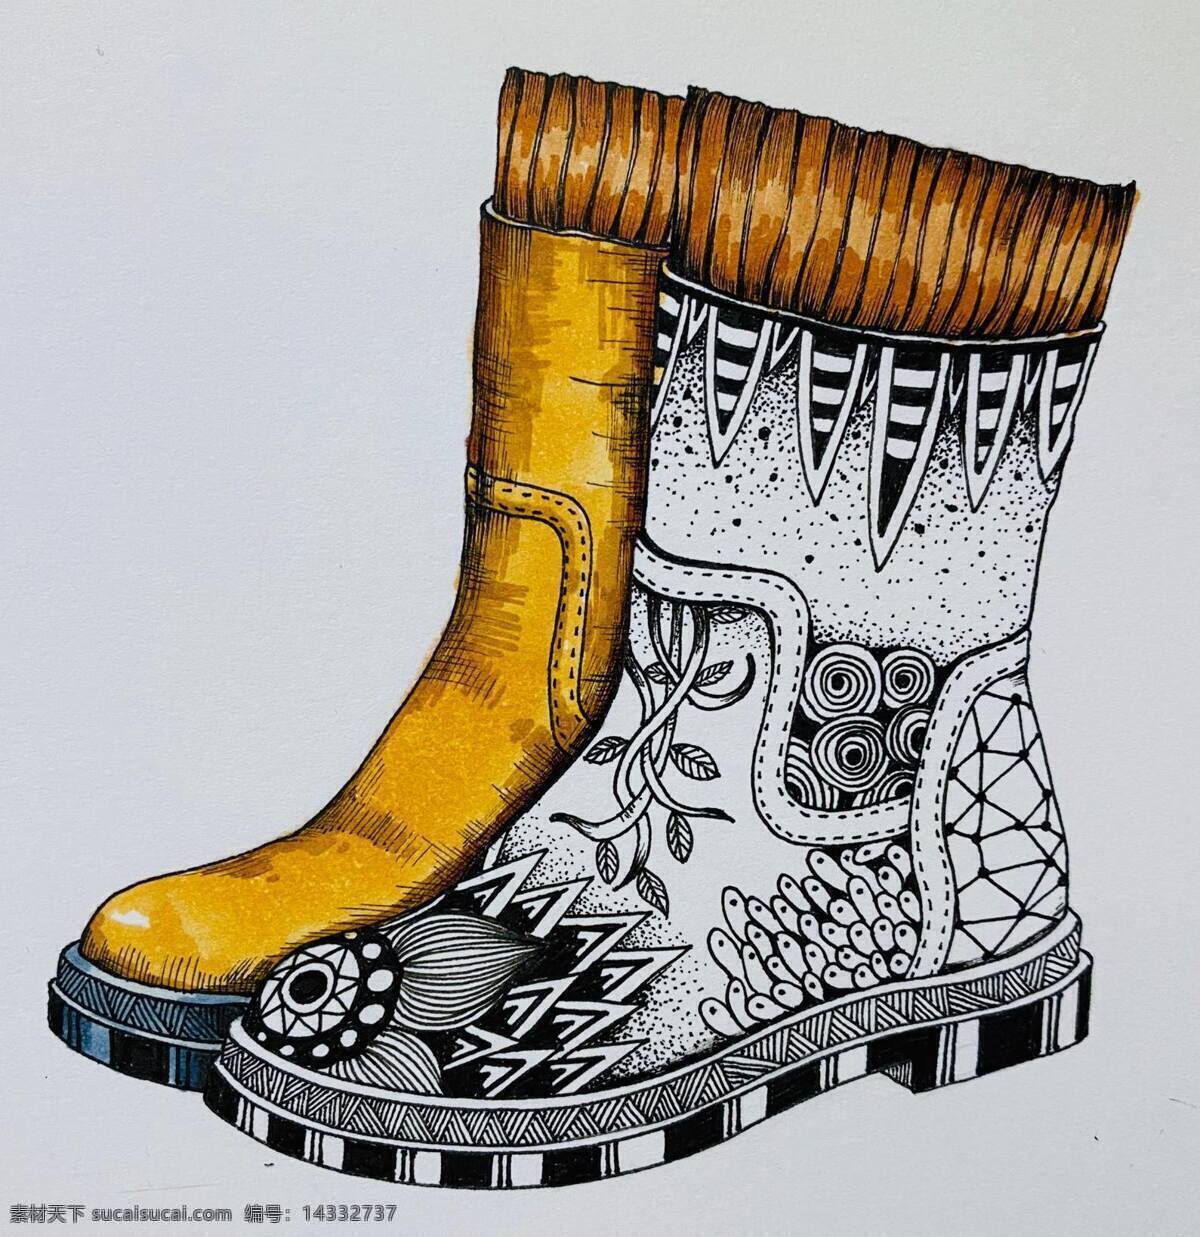 线描靴子 靴子 线描 马克笔 装饰画 创意 文化艺术 绘画书法